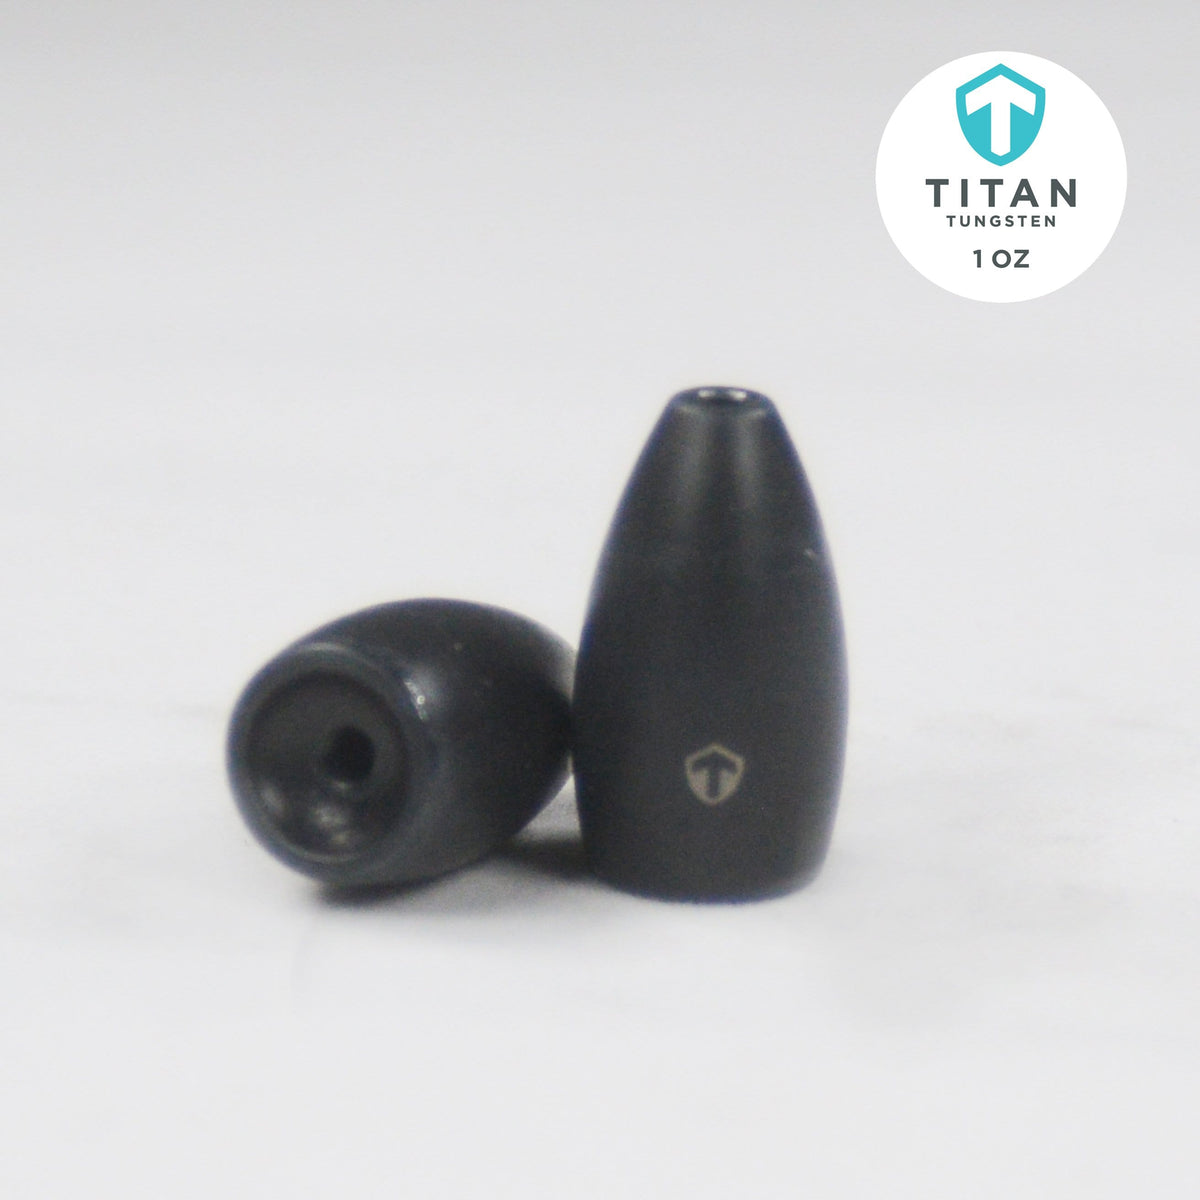 Pro-Series Tungsten Flipping Weights – Titan Tungsten